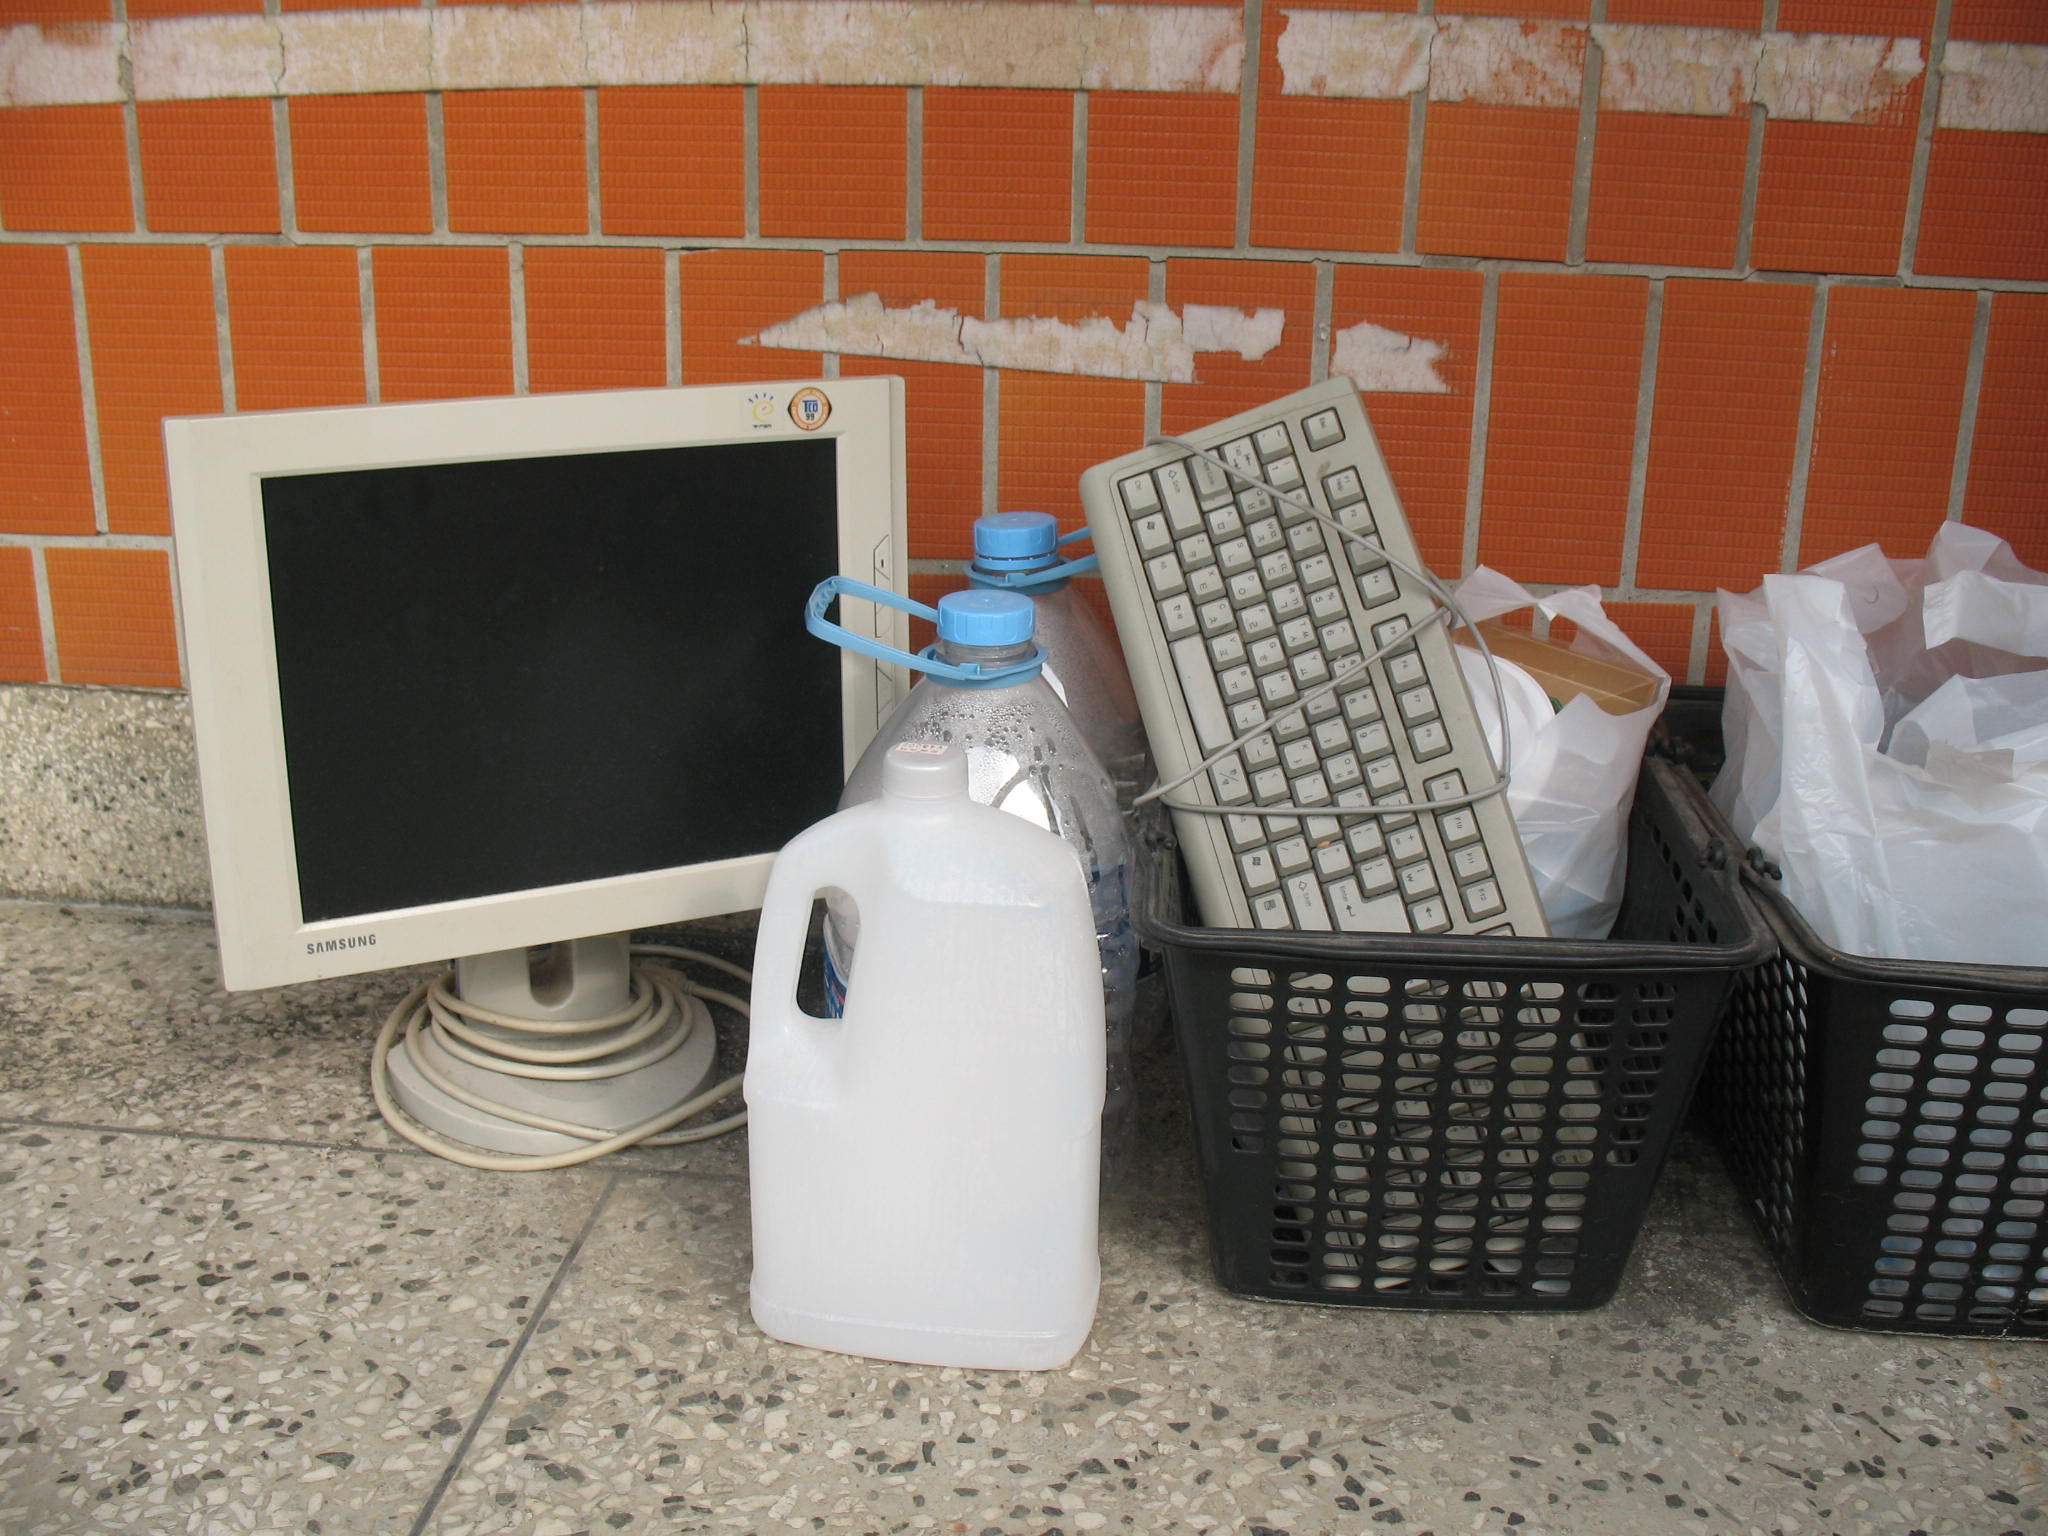 컴퓨터 모니터의 경우 소형가전제품 무료수거의 대상이 되고 키보드는 플라스틱으로 분류하면 된다. 